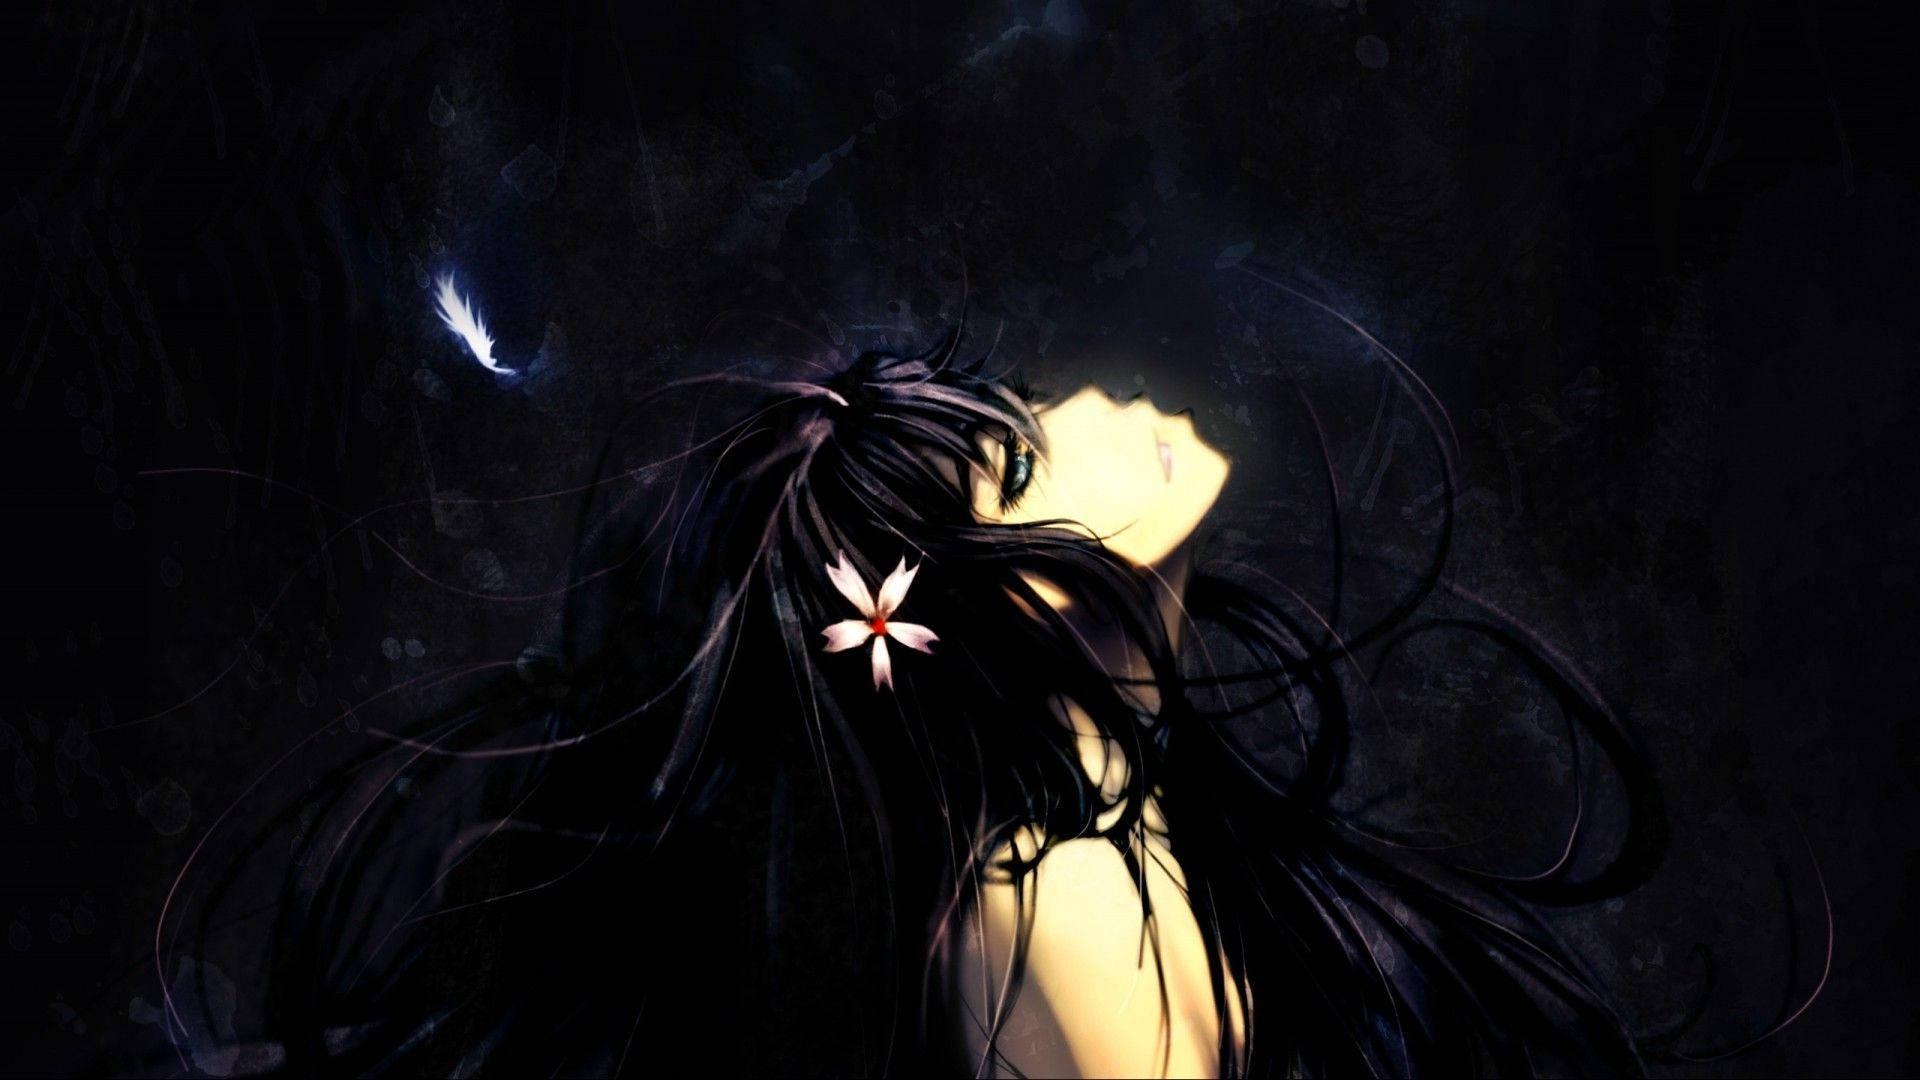 Dark Anime Girl With Black Hair Wallpaper